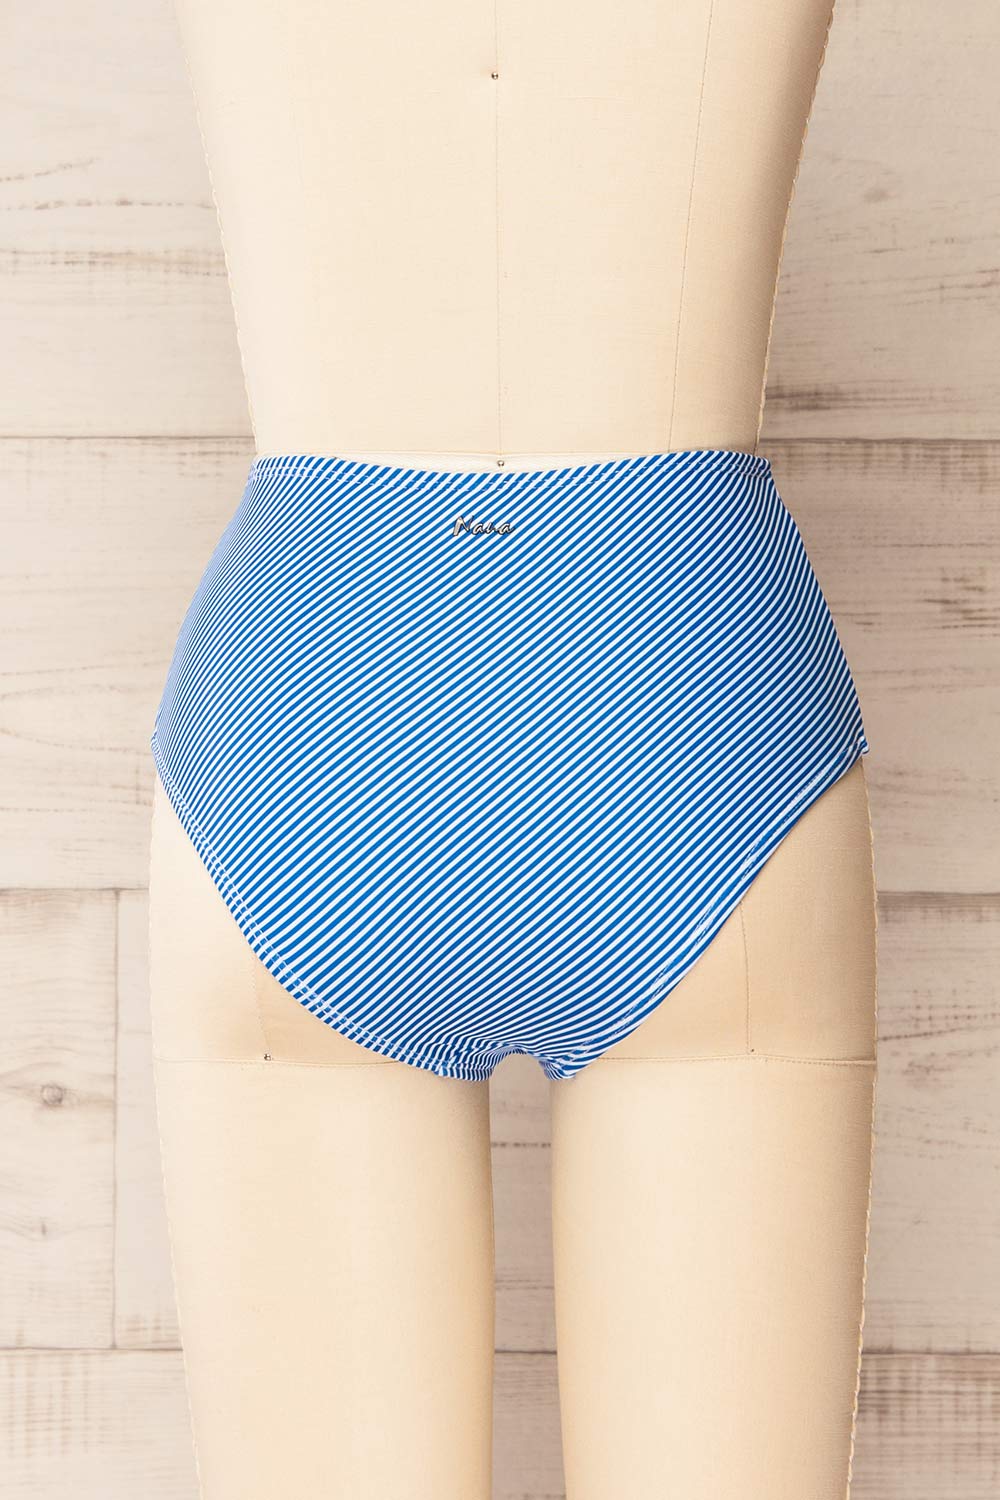 Engel Stripes Blue High-Waisted Bikini Bottom | La petite garçonne  back view